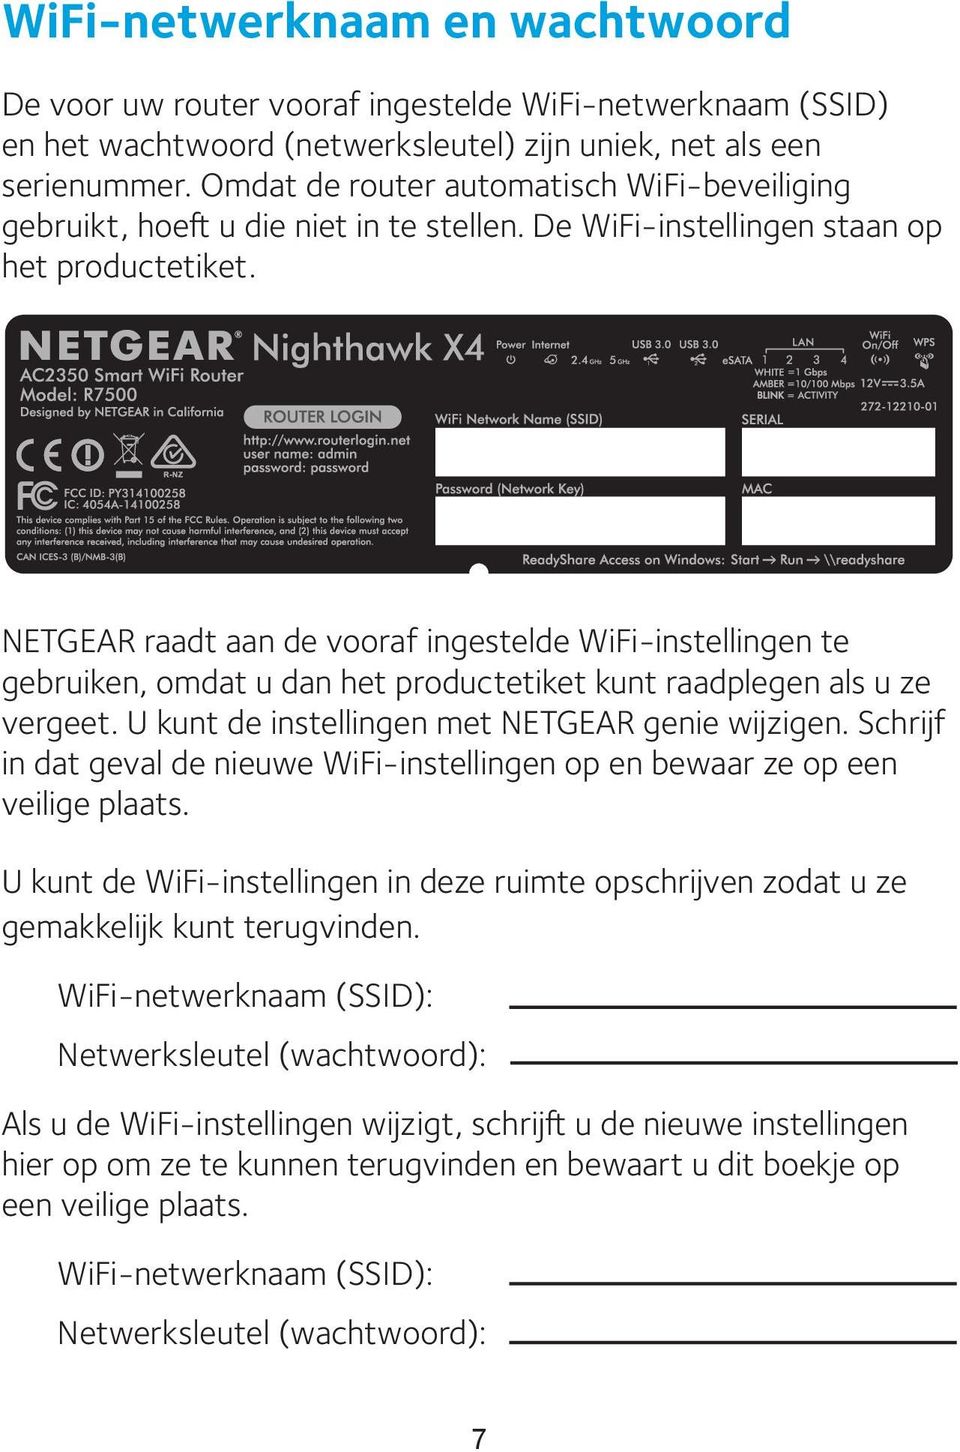 NETGEAR raadt aan de vooraf ingestelde WiFi-instellingen te gebruiken, omdat u dan het productetiket kunt raadplegen als u ze vergeet. U kunt de instellingen met NETGEAR genie wijzigen.